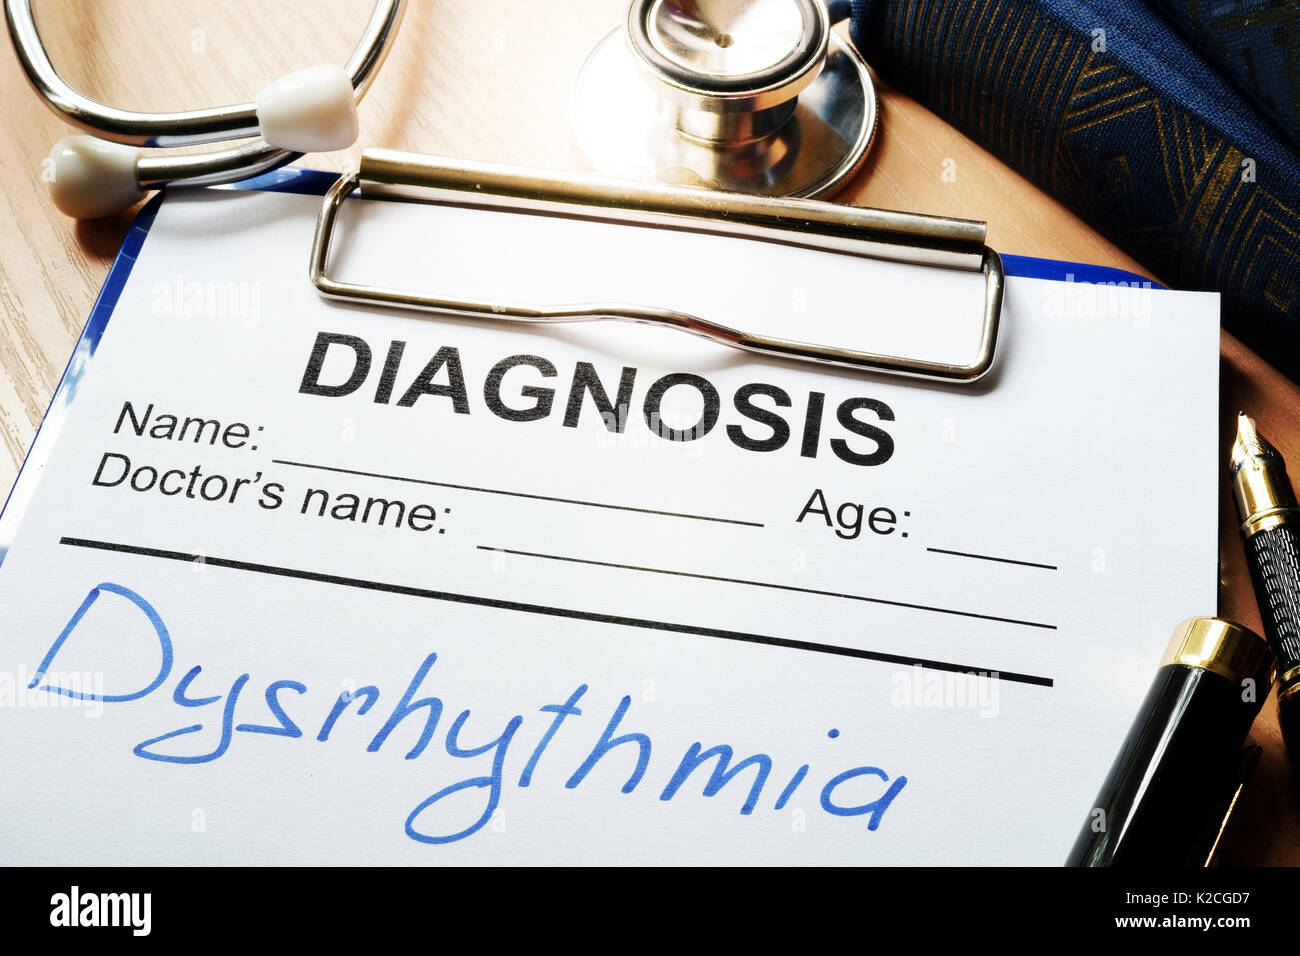 Diagnosis form with disease dysrhythmia. Stock Photo